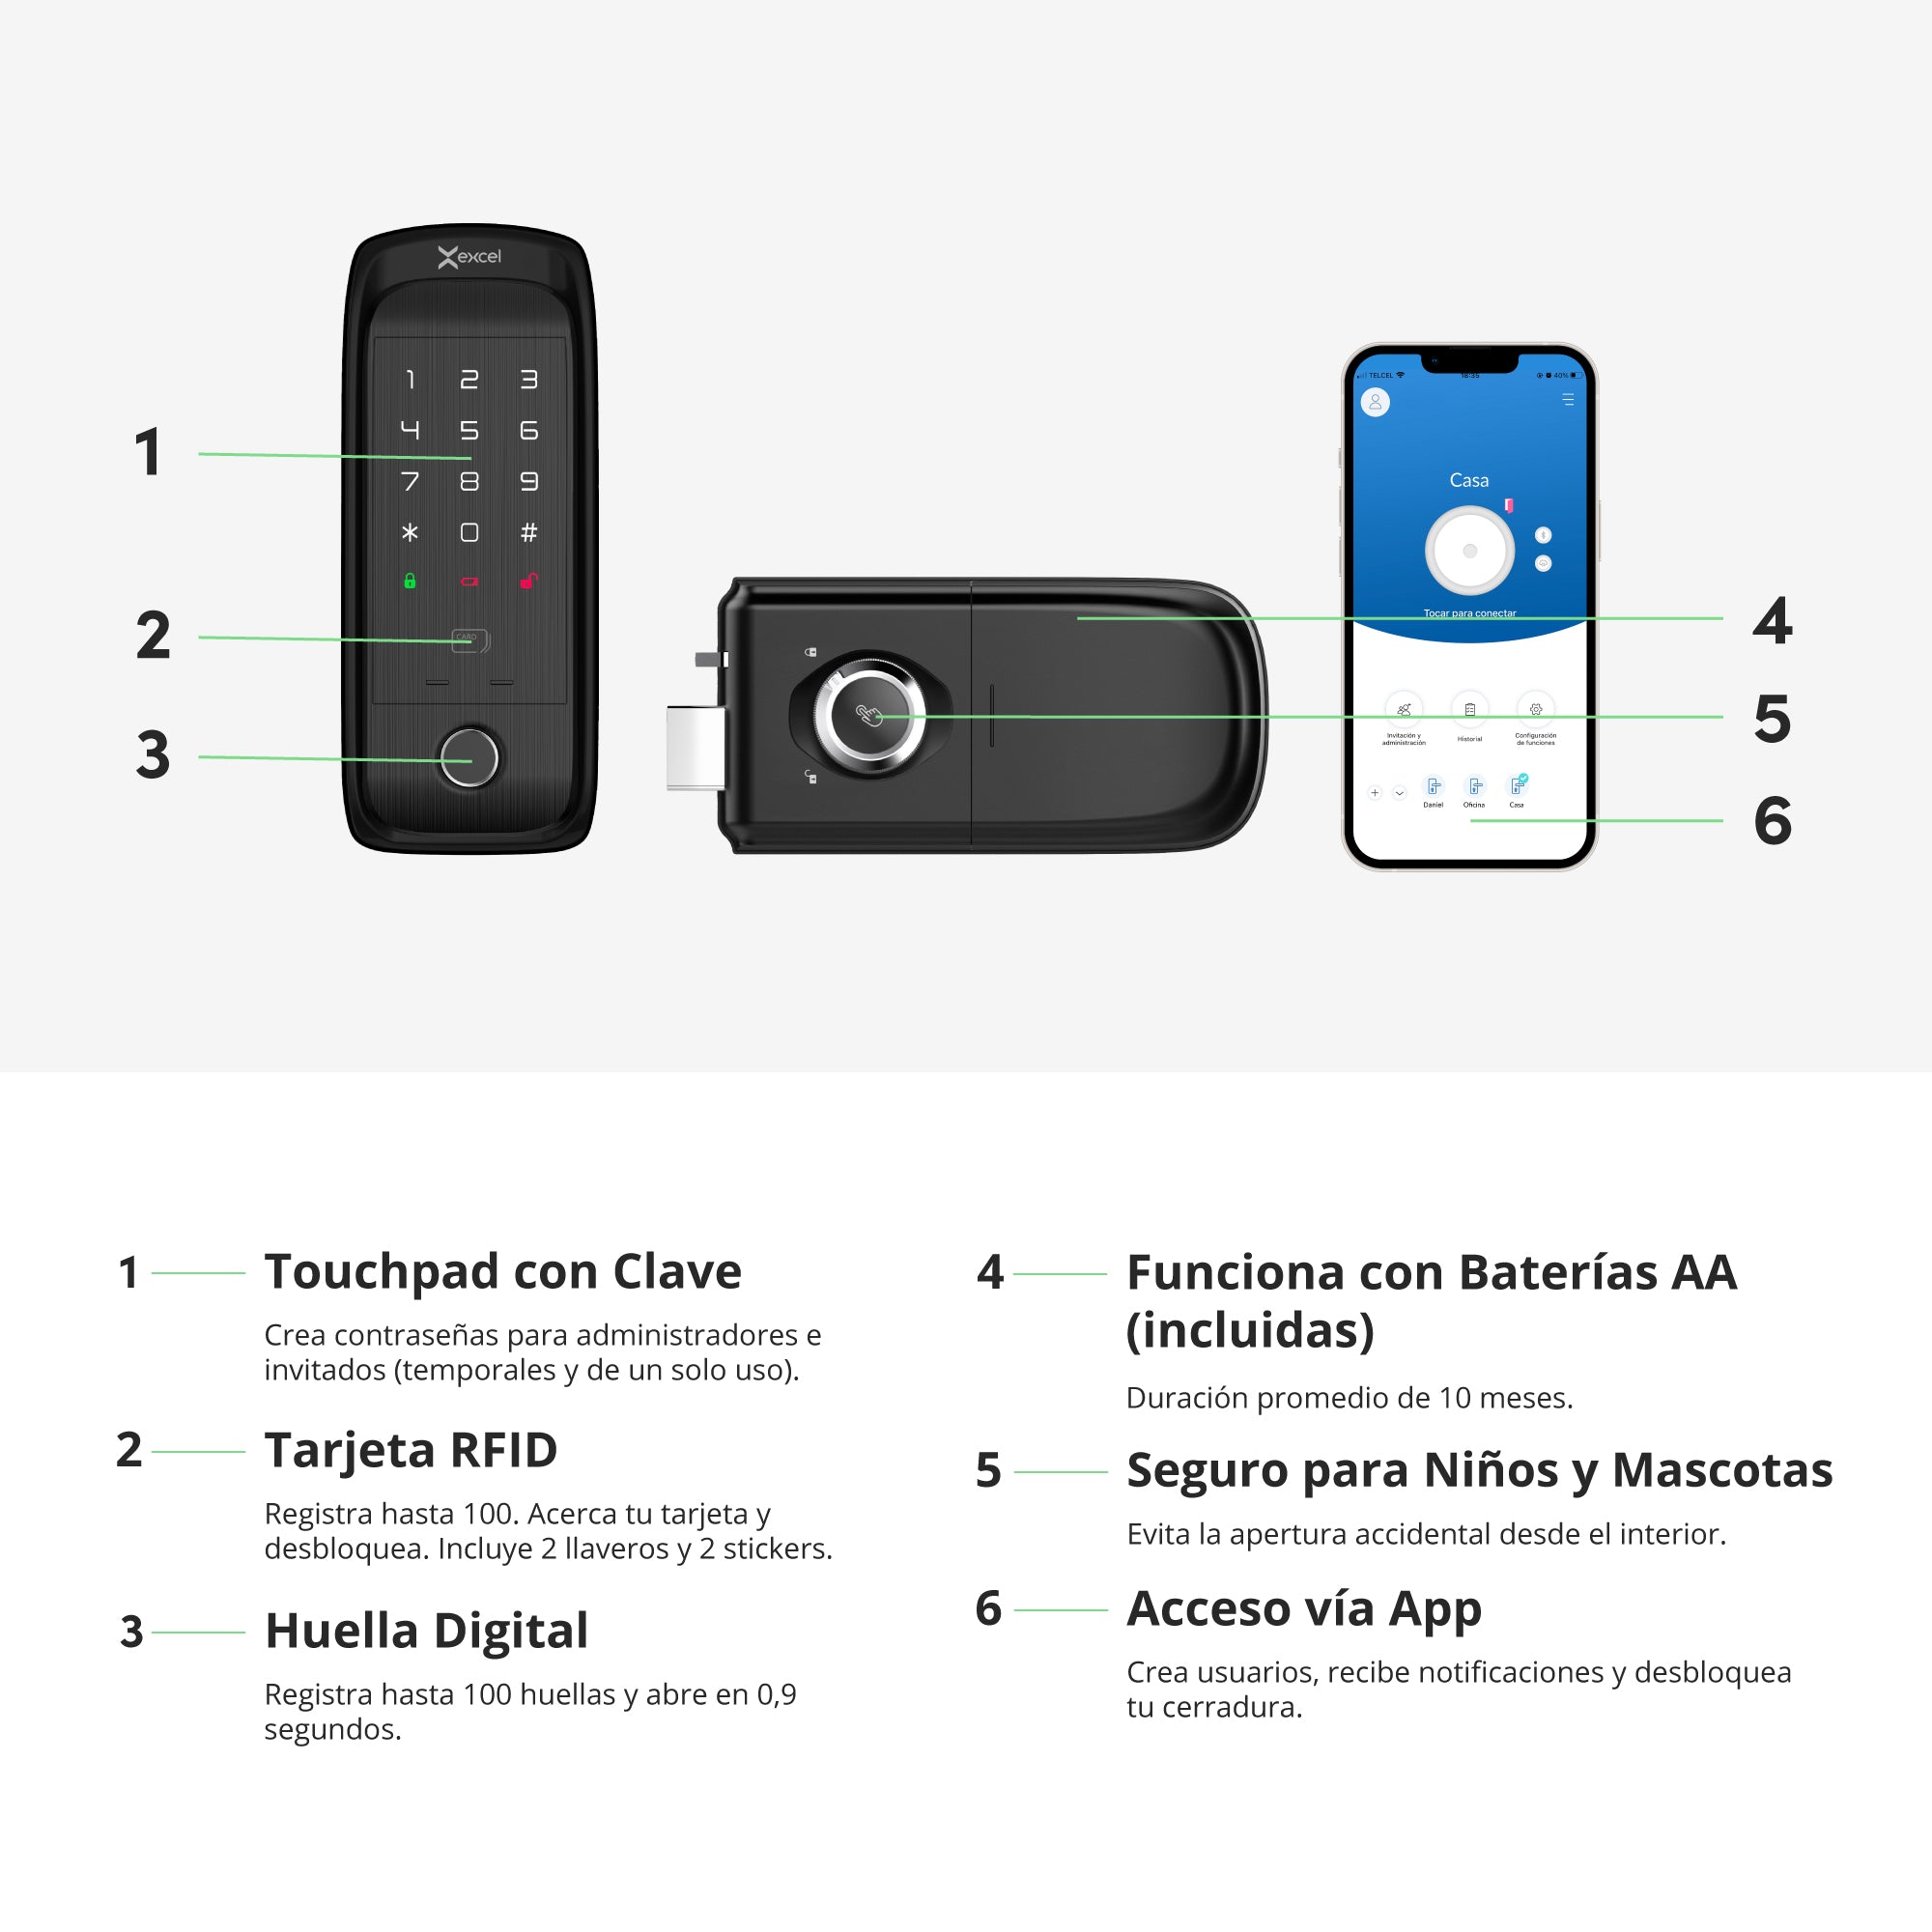 Cerradura inteligente WiFi Excel SD400 módulo interior y exterior. Contraseña numérica, huella digital y tarjeta RFID.